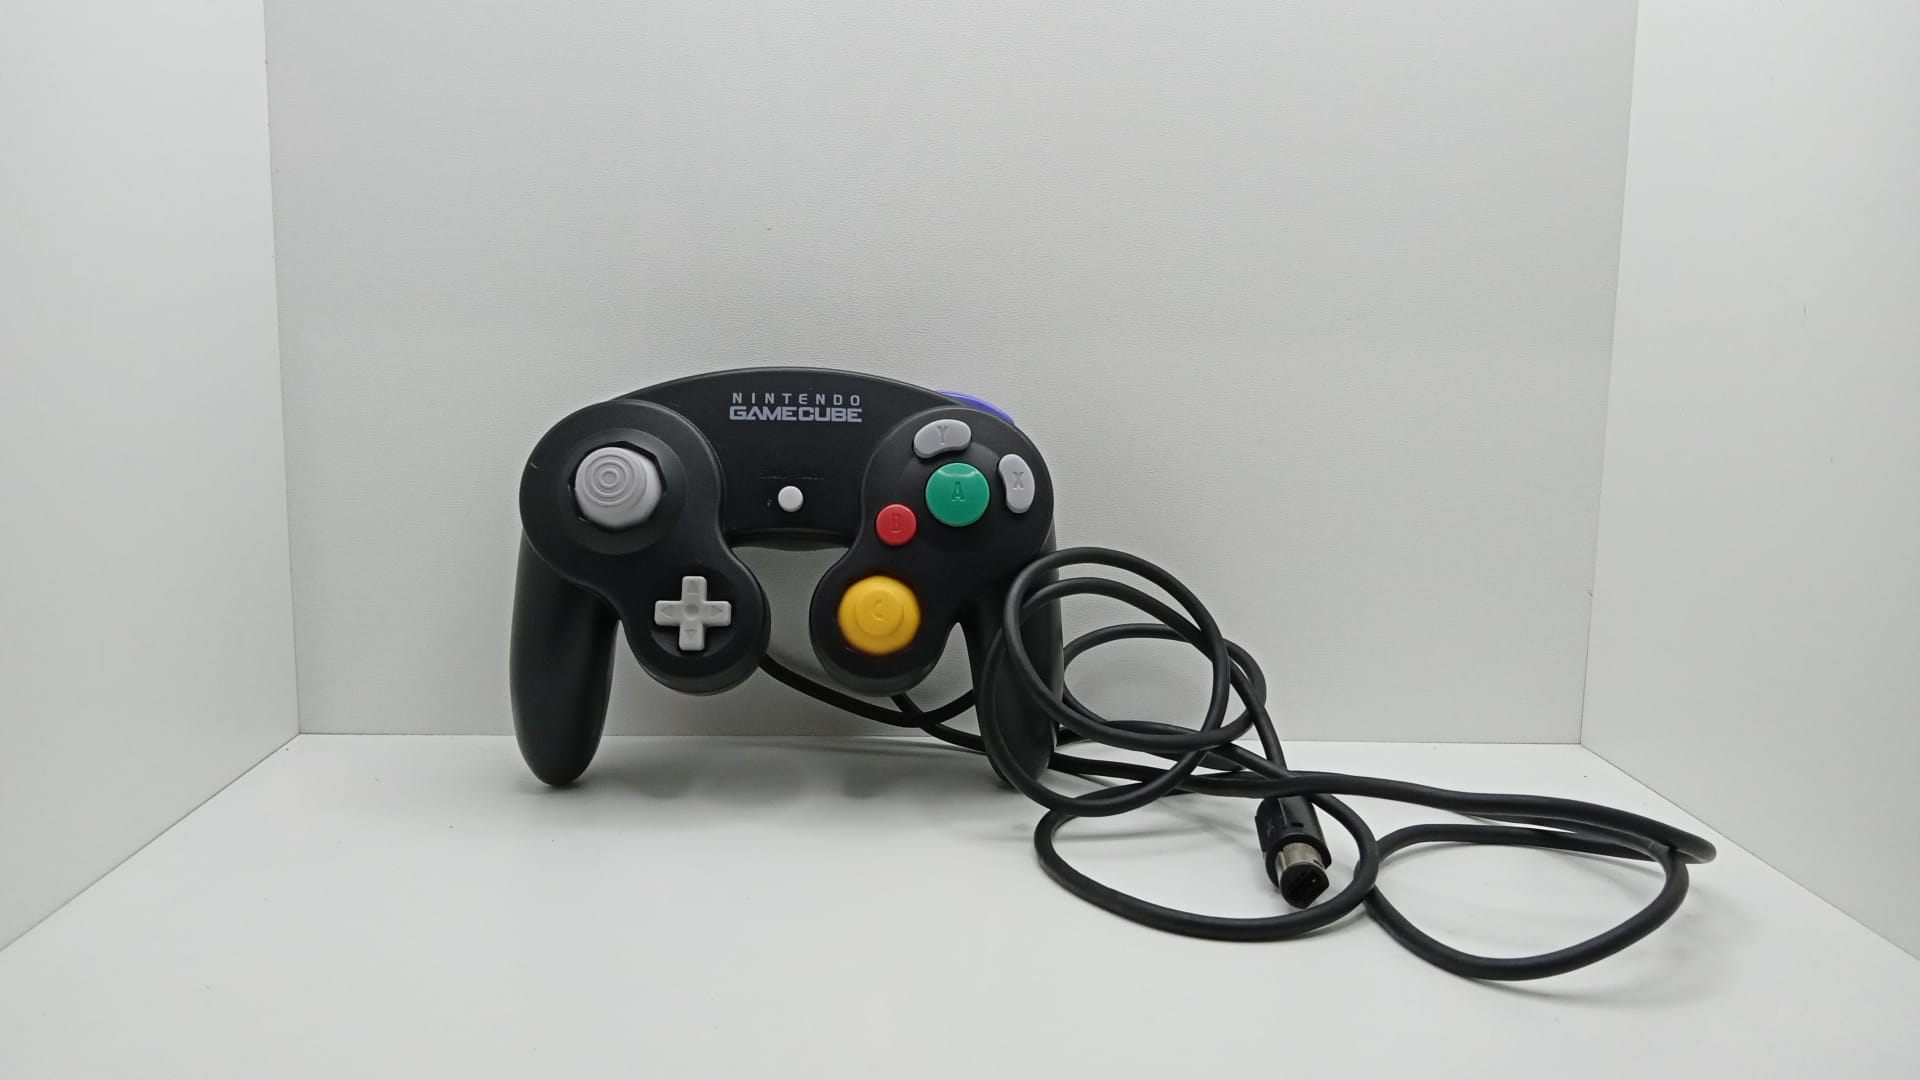 χειριστήριο  Nintendo GameCube - Nintendo® - Black  - καθαρίστηκε και ανακαινίστηκε